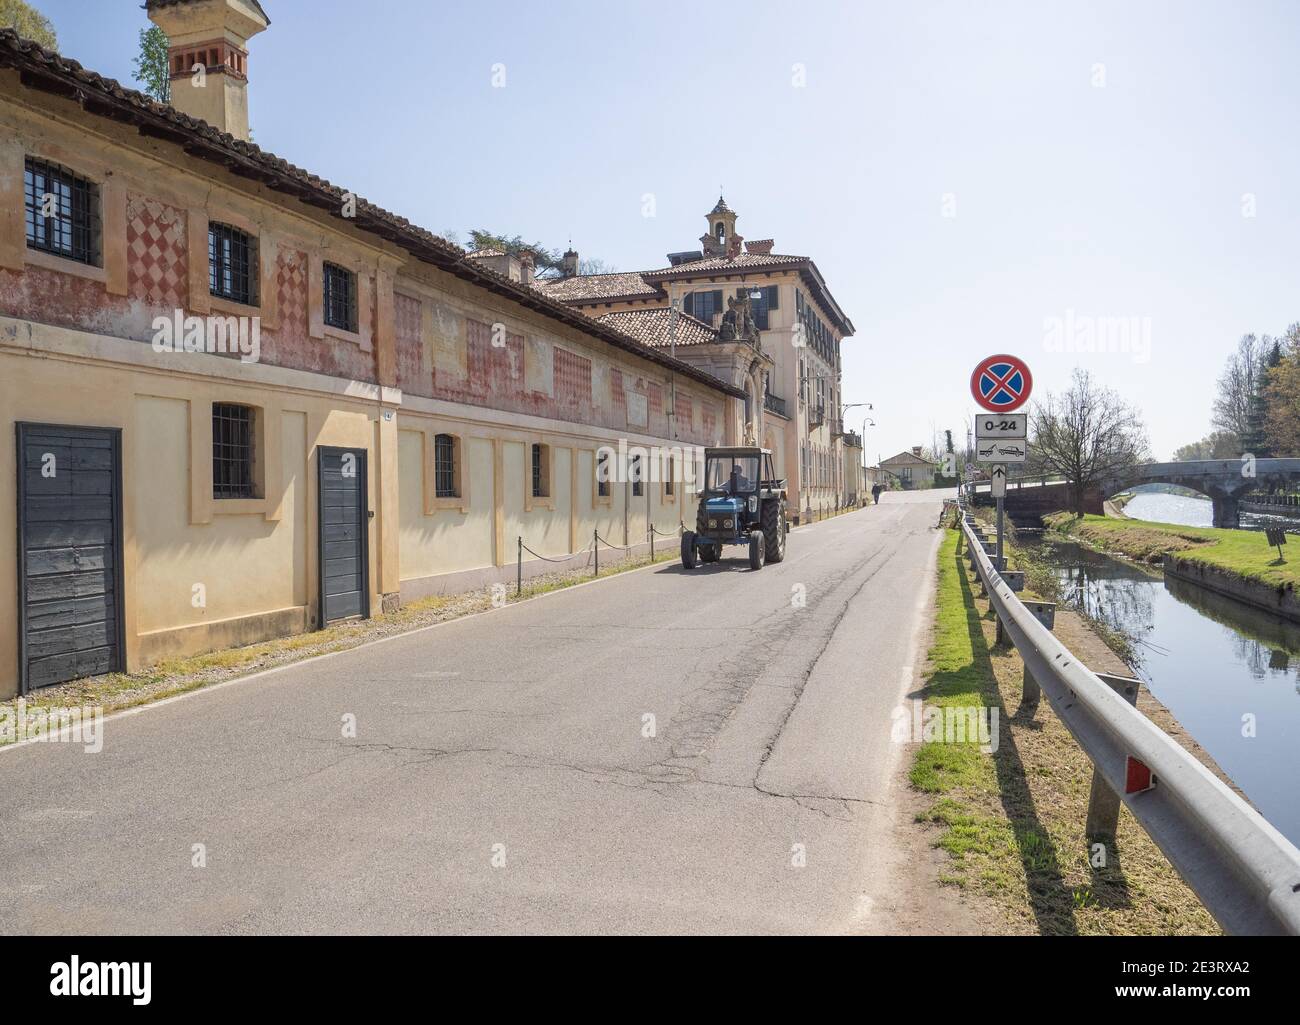 Cassinetta di Lugagnano, landwirtschaftliches Dorf mit alten Villen entlang des Radweges, der entlang des Kanals verläuft, Lombardei, Italien. Stockfoto